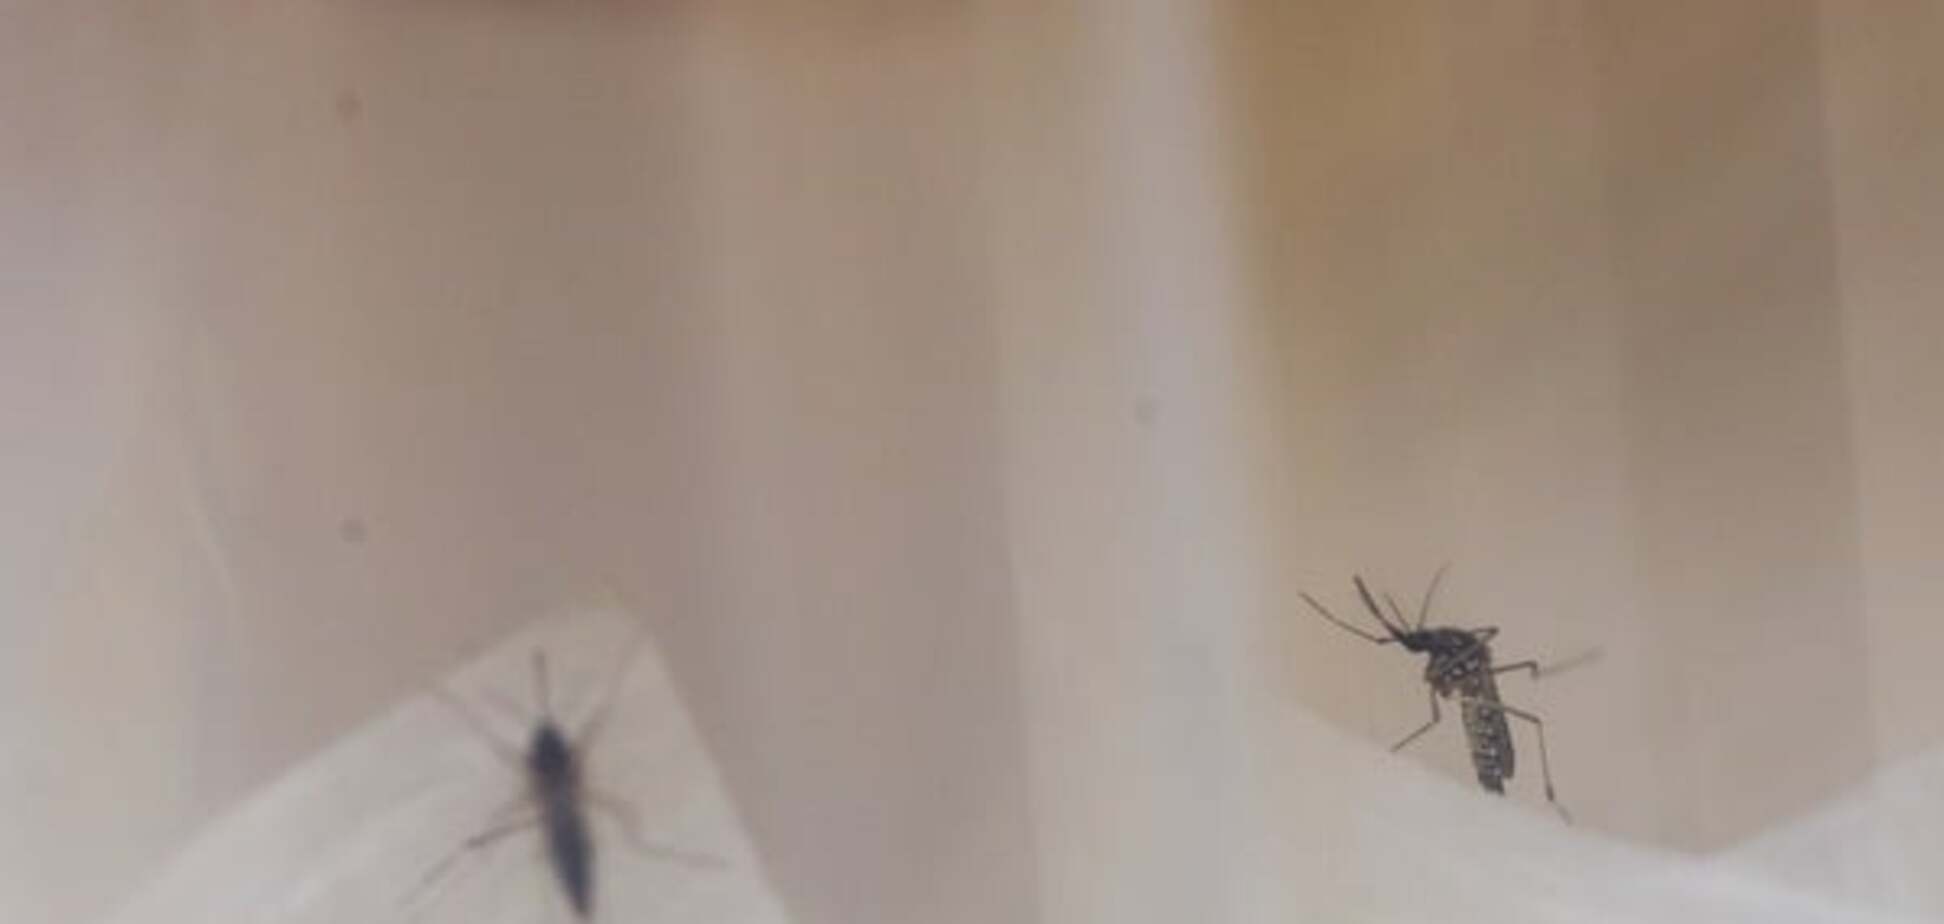 В Аргентине зафиксирована масштабная лихорадка денге: тысячи заболевших